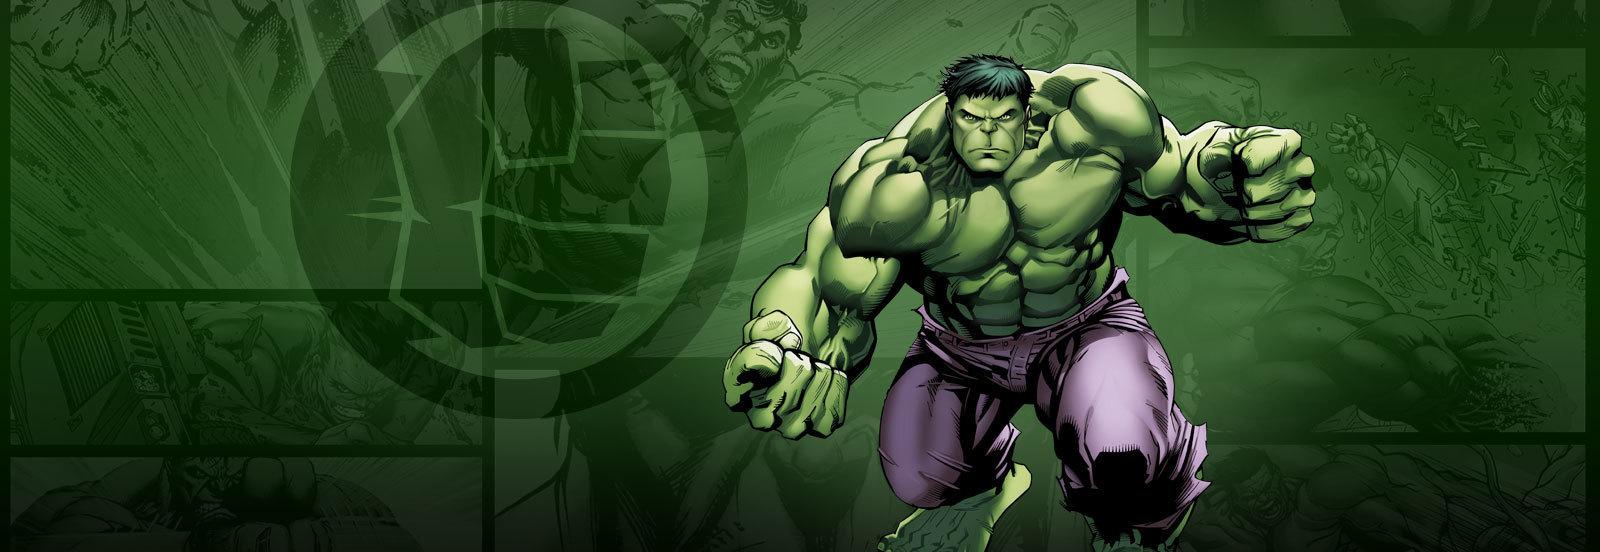 Incredible Hulk Marvel Avenger Superhero Background HD Wallpaper